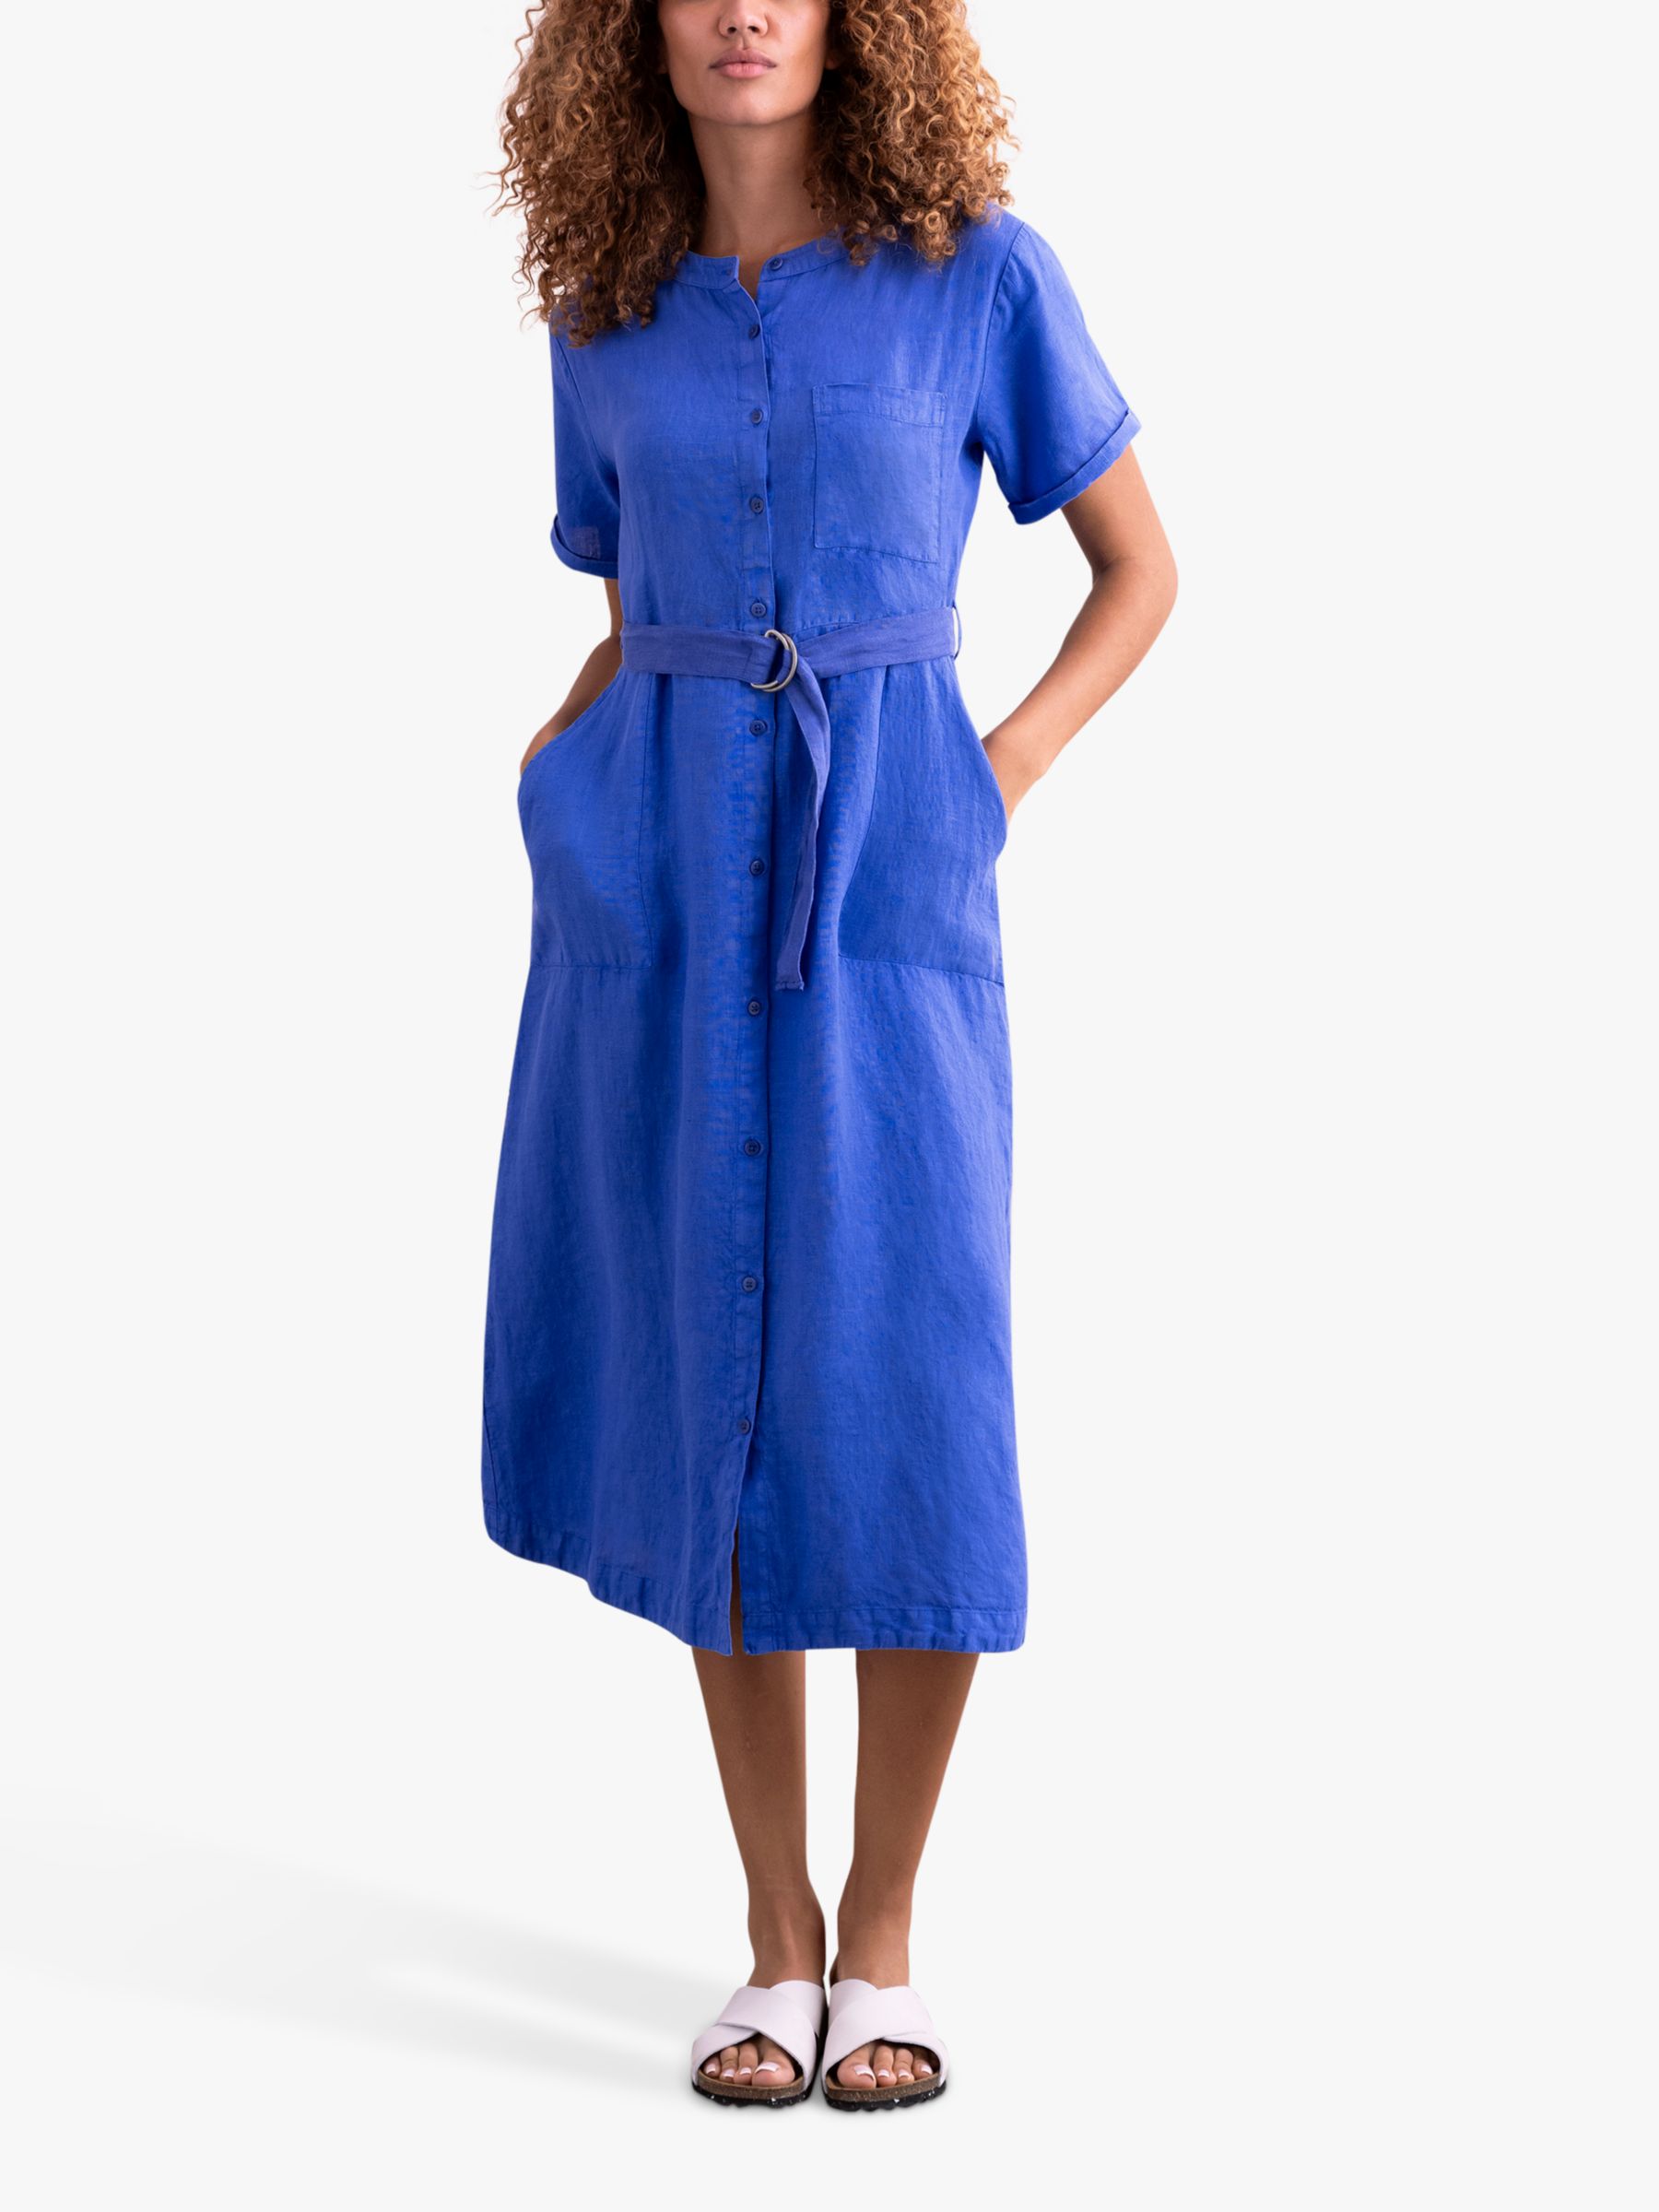 Celtic & Co. Cotton And Linen Button Through Midi Dress, Cobalt, 8